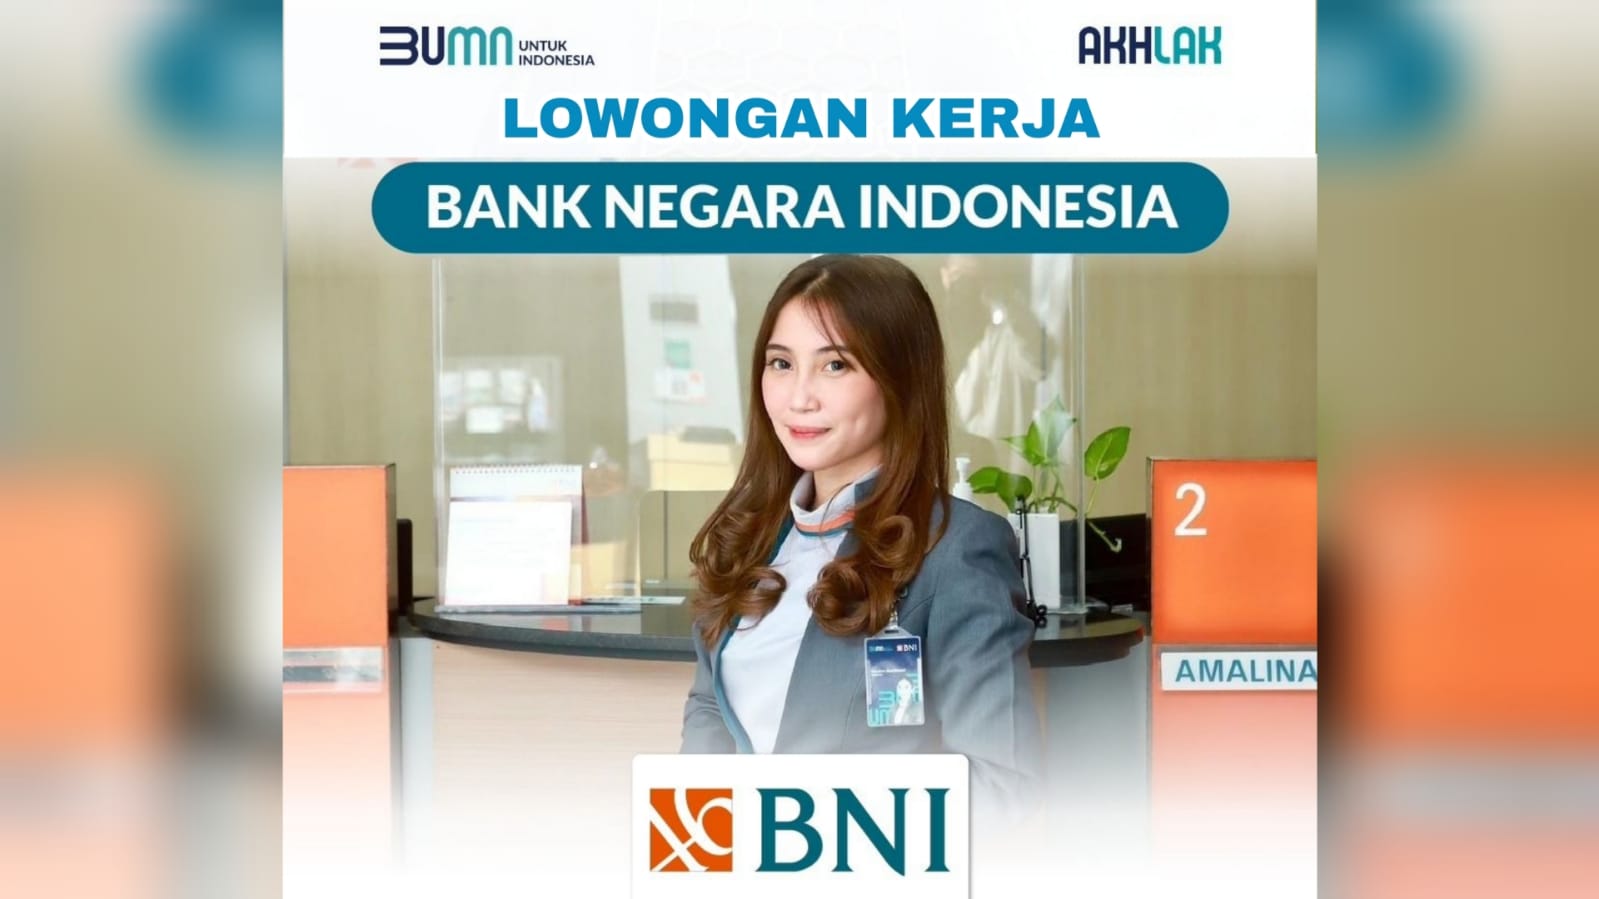 Lowongan Kerja BUMN Bank Negara Indonesia (BNI) Lulusan SMA SMK D3 S1 Semua Jurusan, Begini Cara Lamarnya!